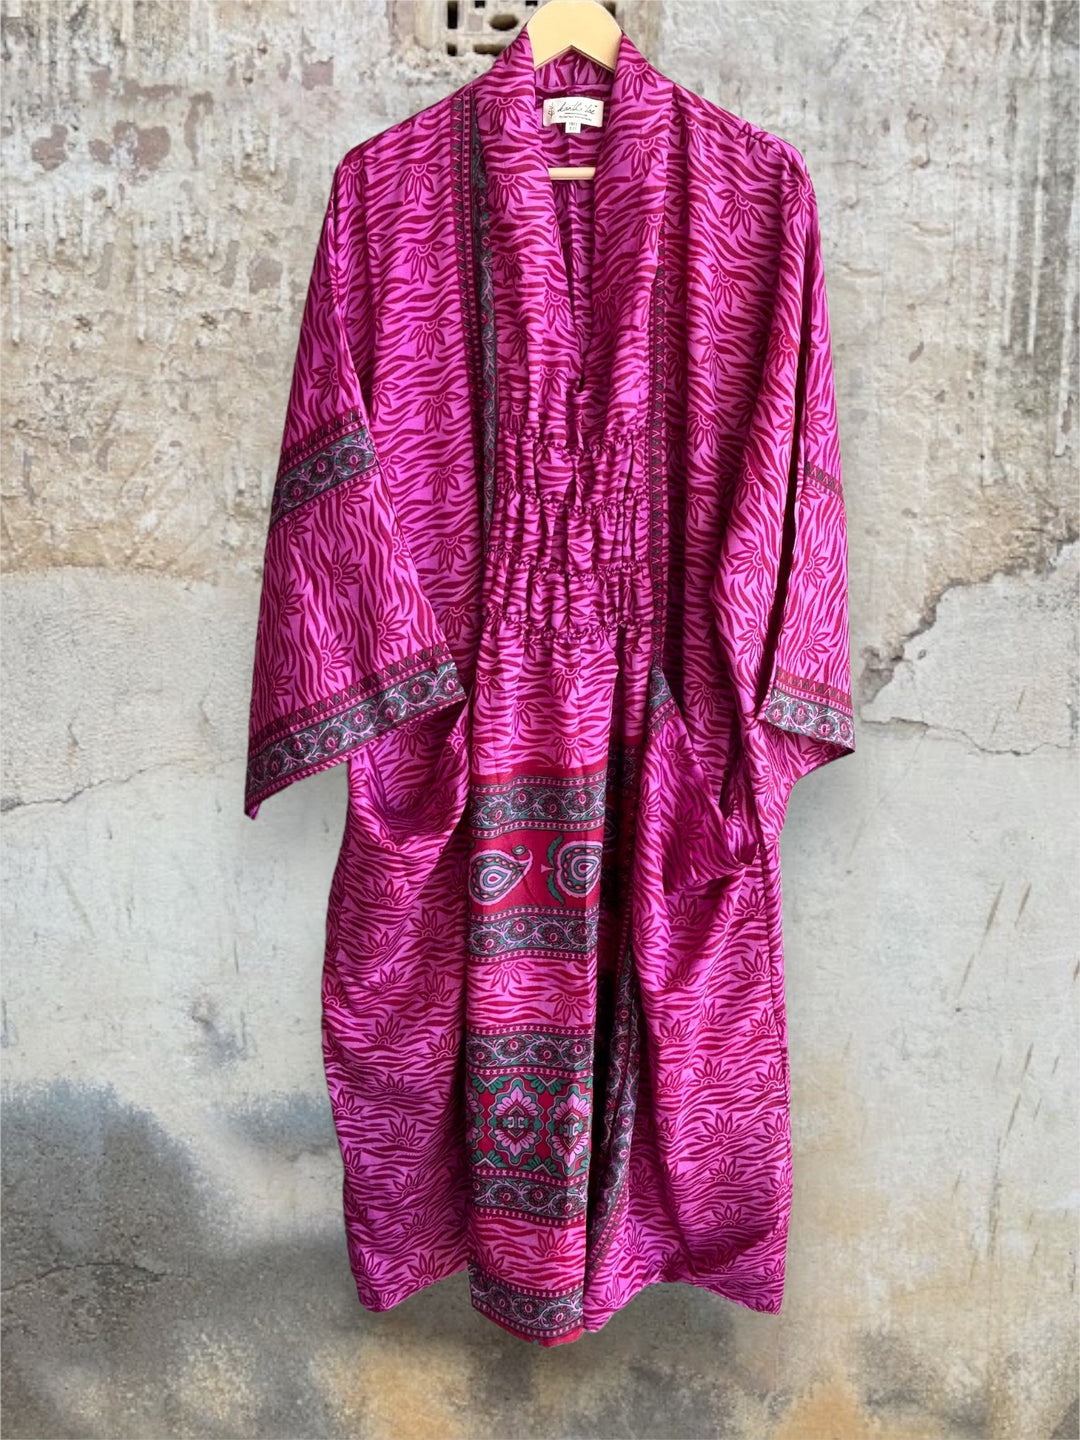 Ruched Dress 0424 103 - Kantha Bae